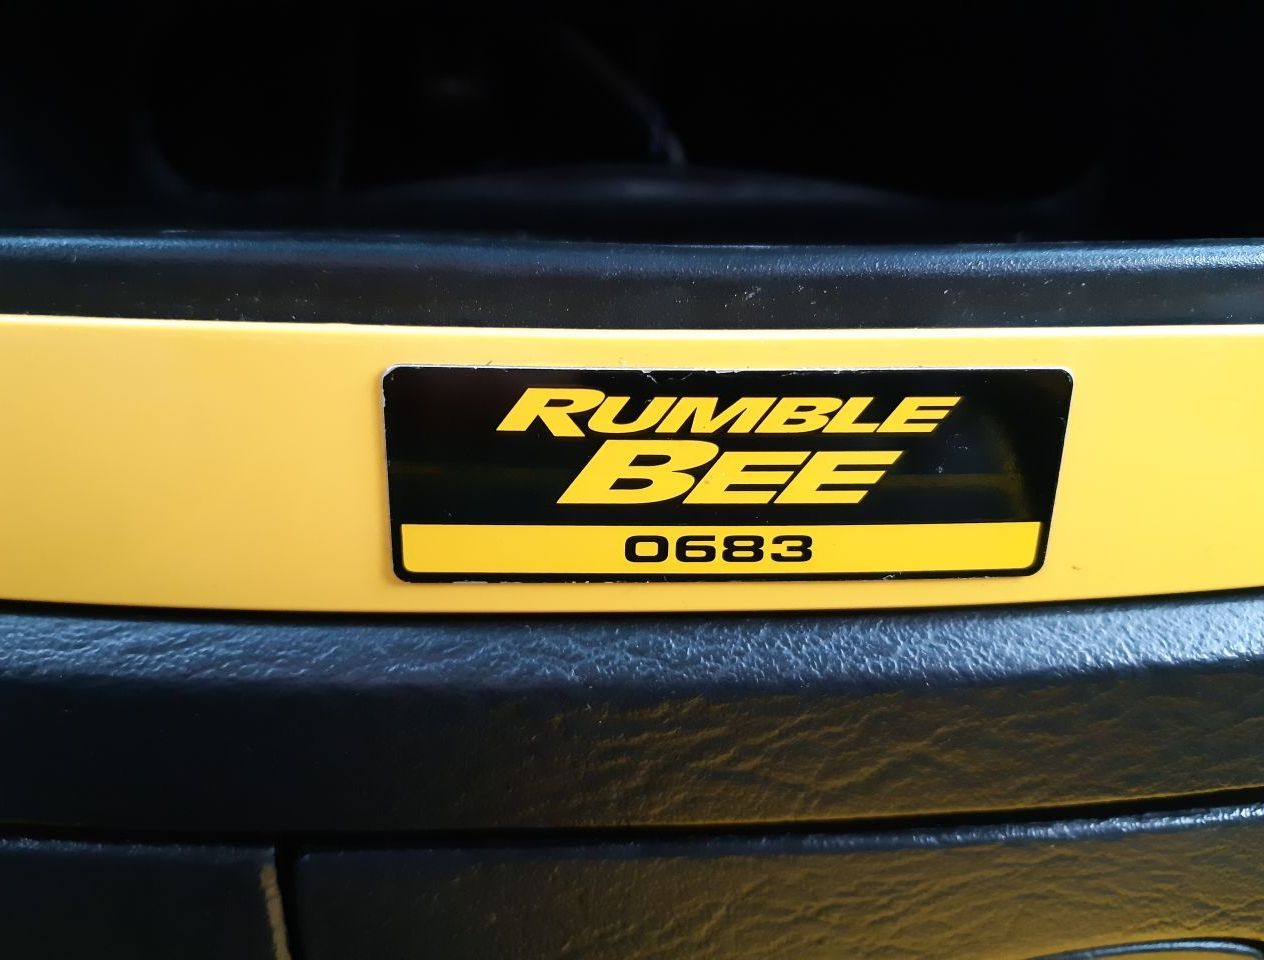 заводской порядковый номер серии Rumble Bee